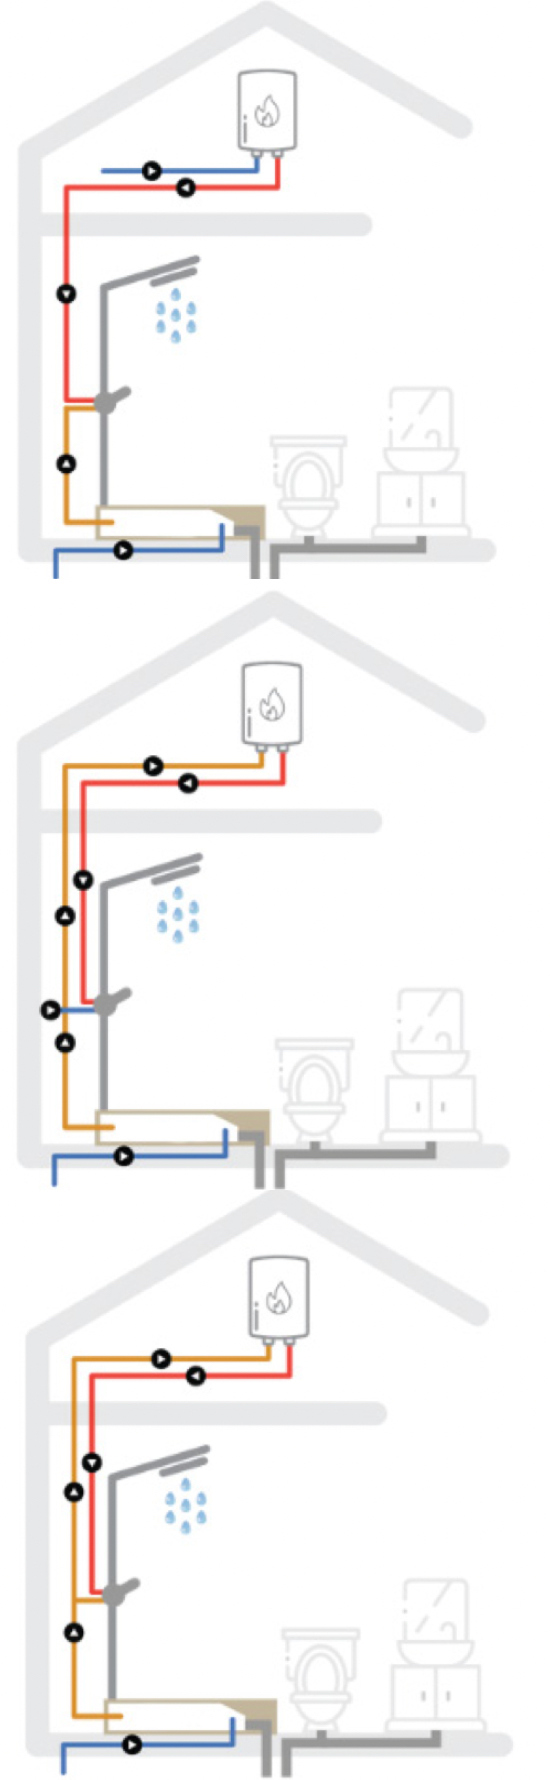 Schémas des trois possibilités de fonctionnement du récupérateur de chaleur HERS de McBath 